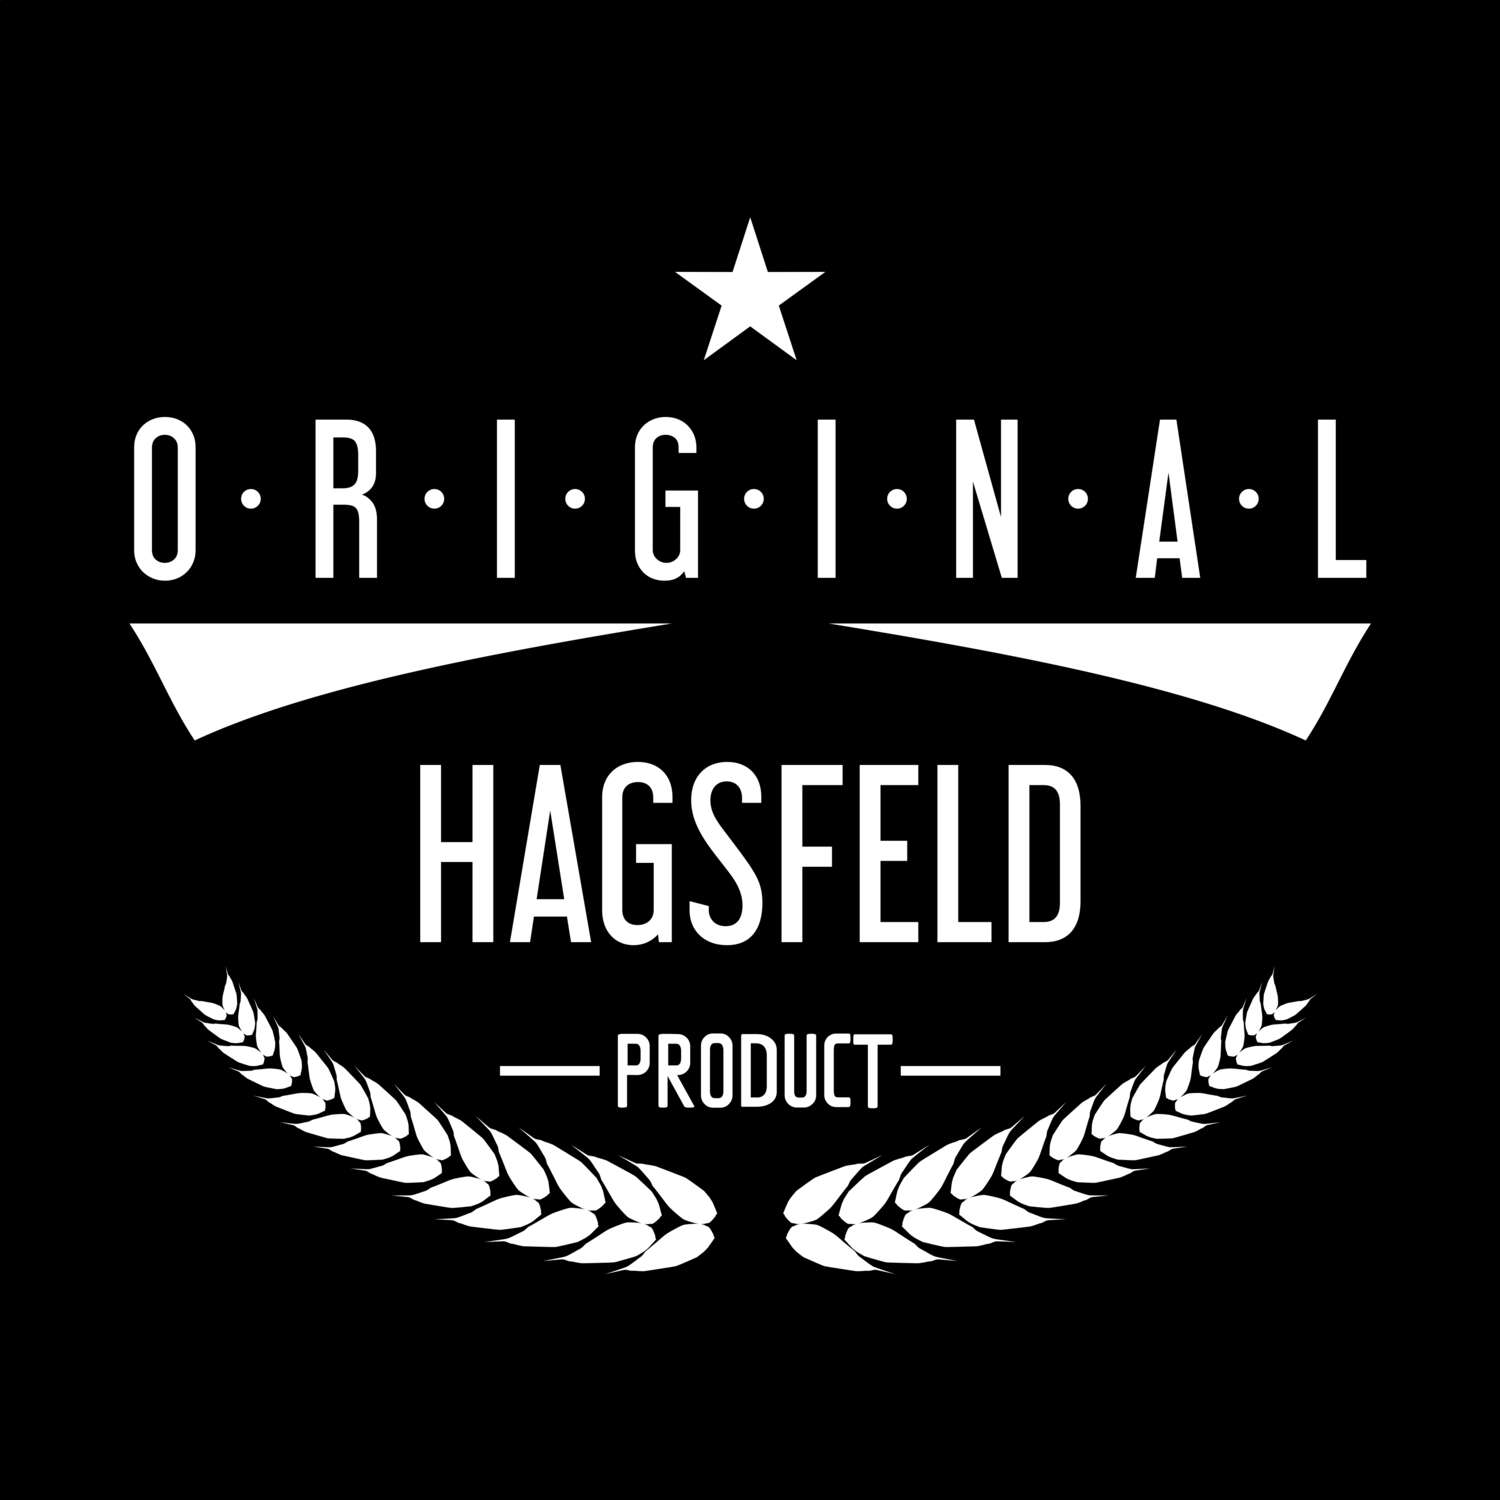 Hagsfeld T-Shirt »Original Product«